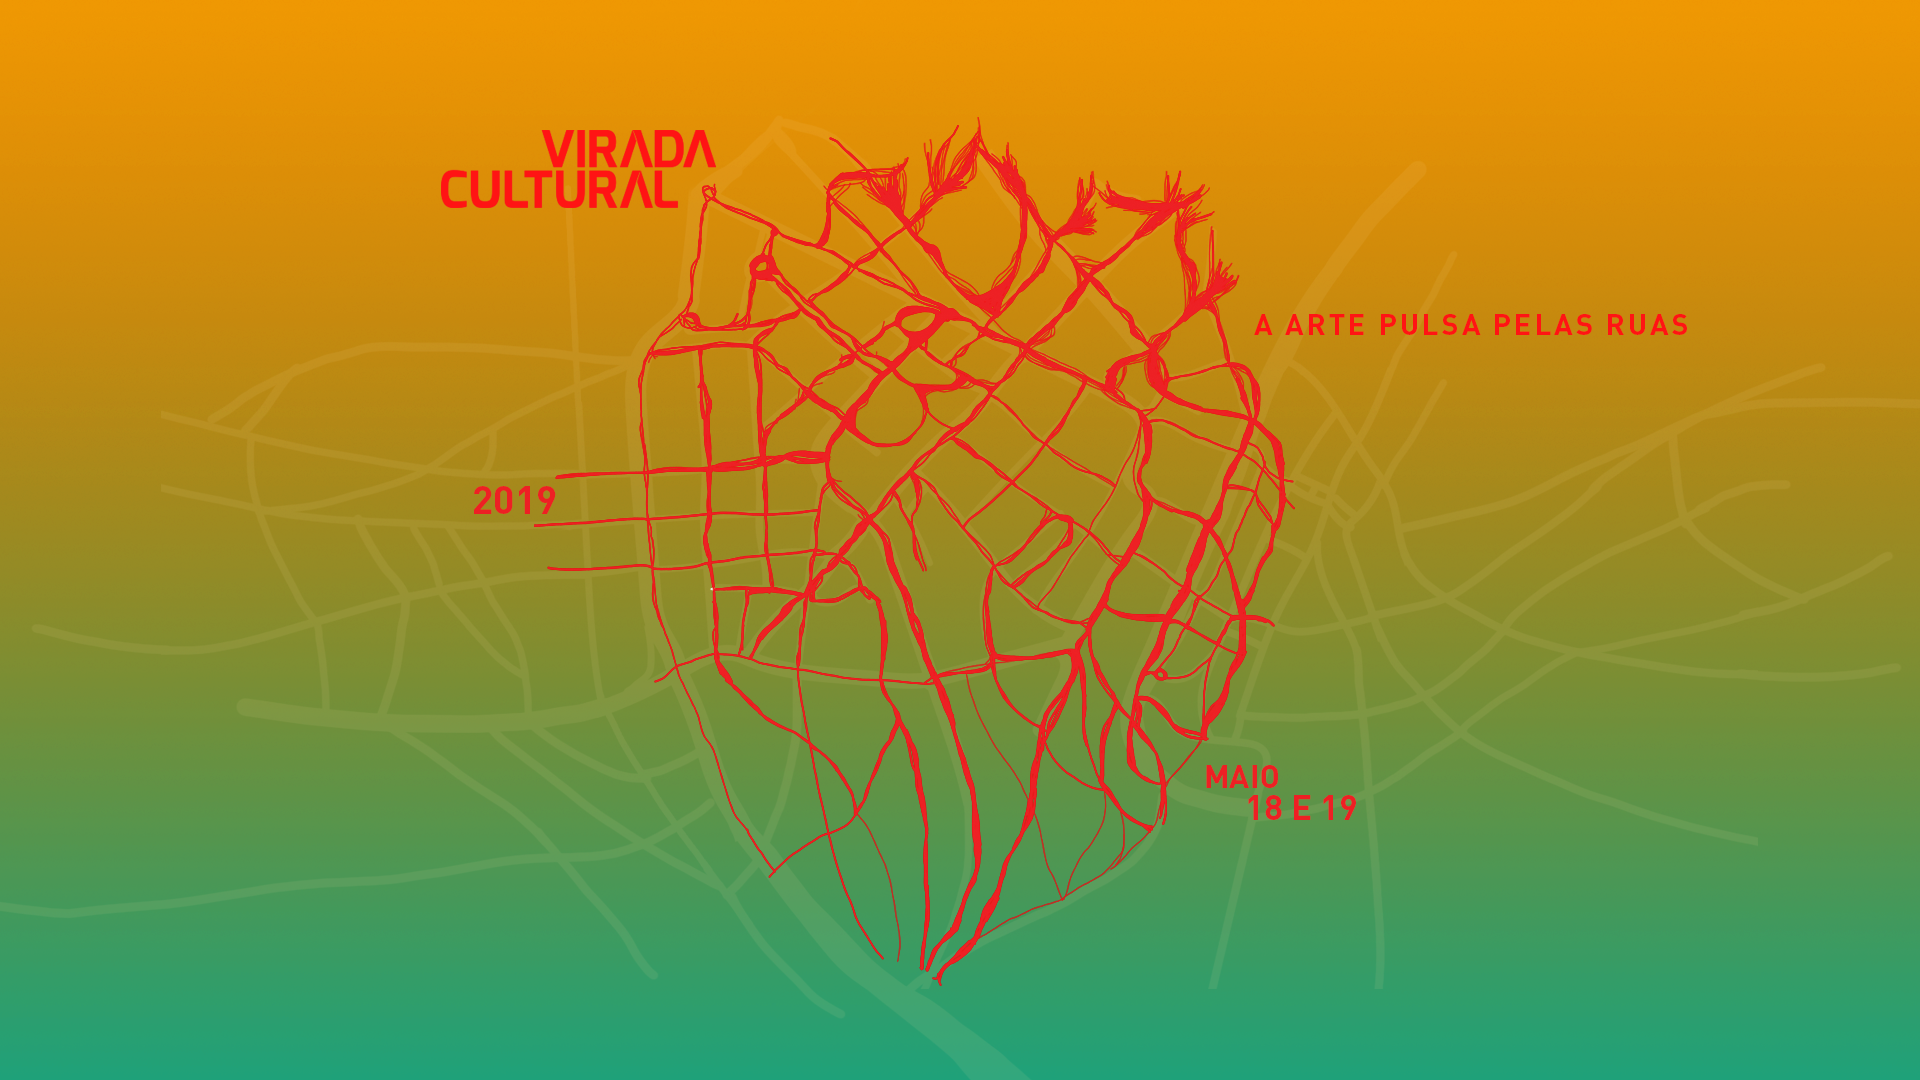 Secretaria Municipal de Cultura recebe propostas artísticas para a 15ª edição da Virada Cultural até 16 de dezembro